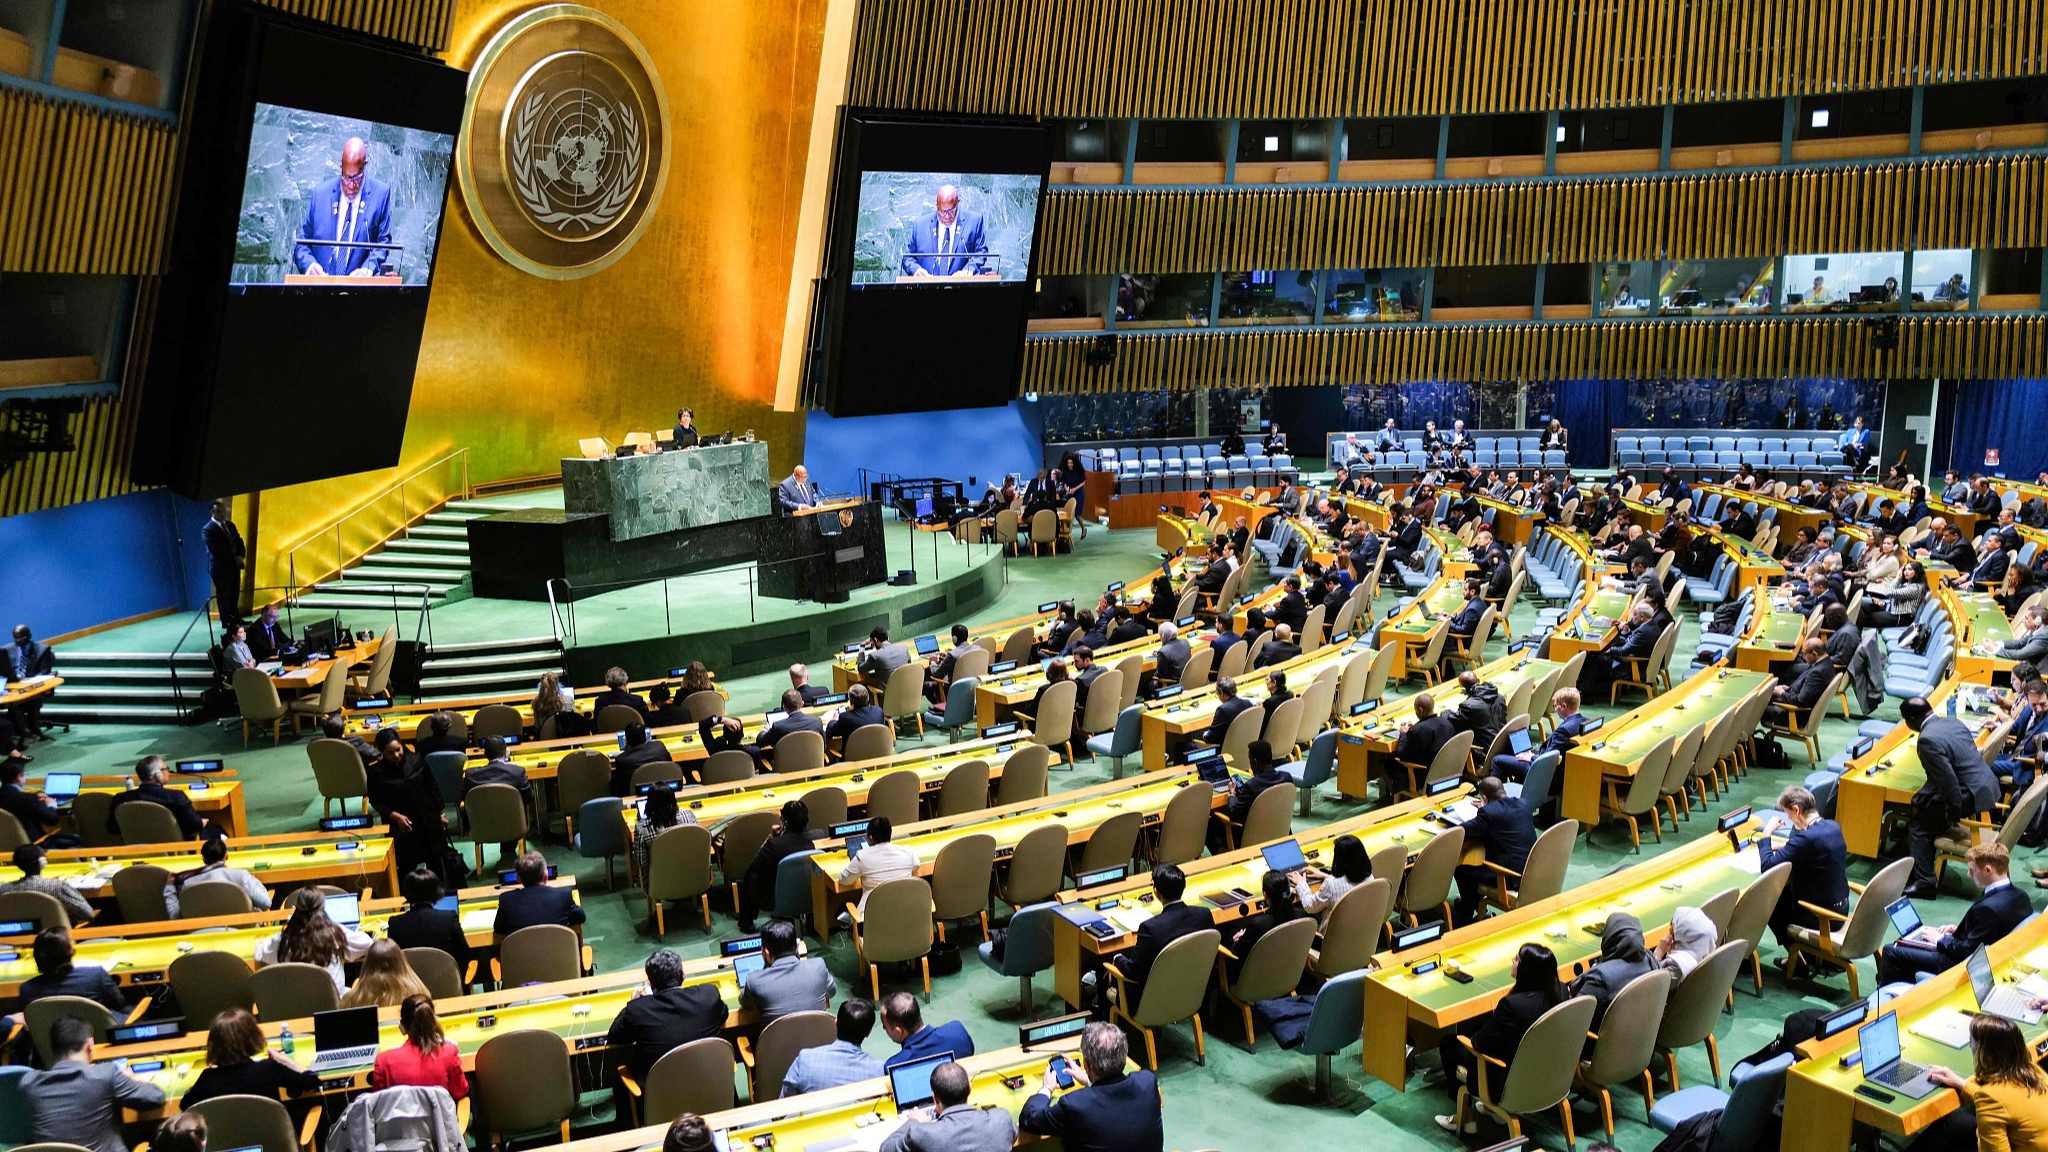 Palestinian bid for UN membership still faces hurdles, say experts